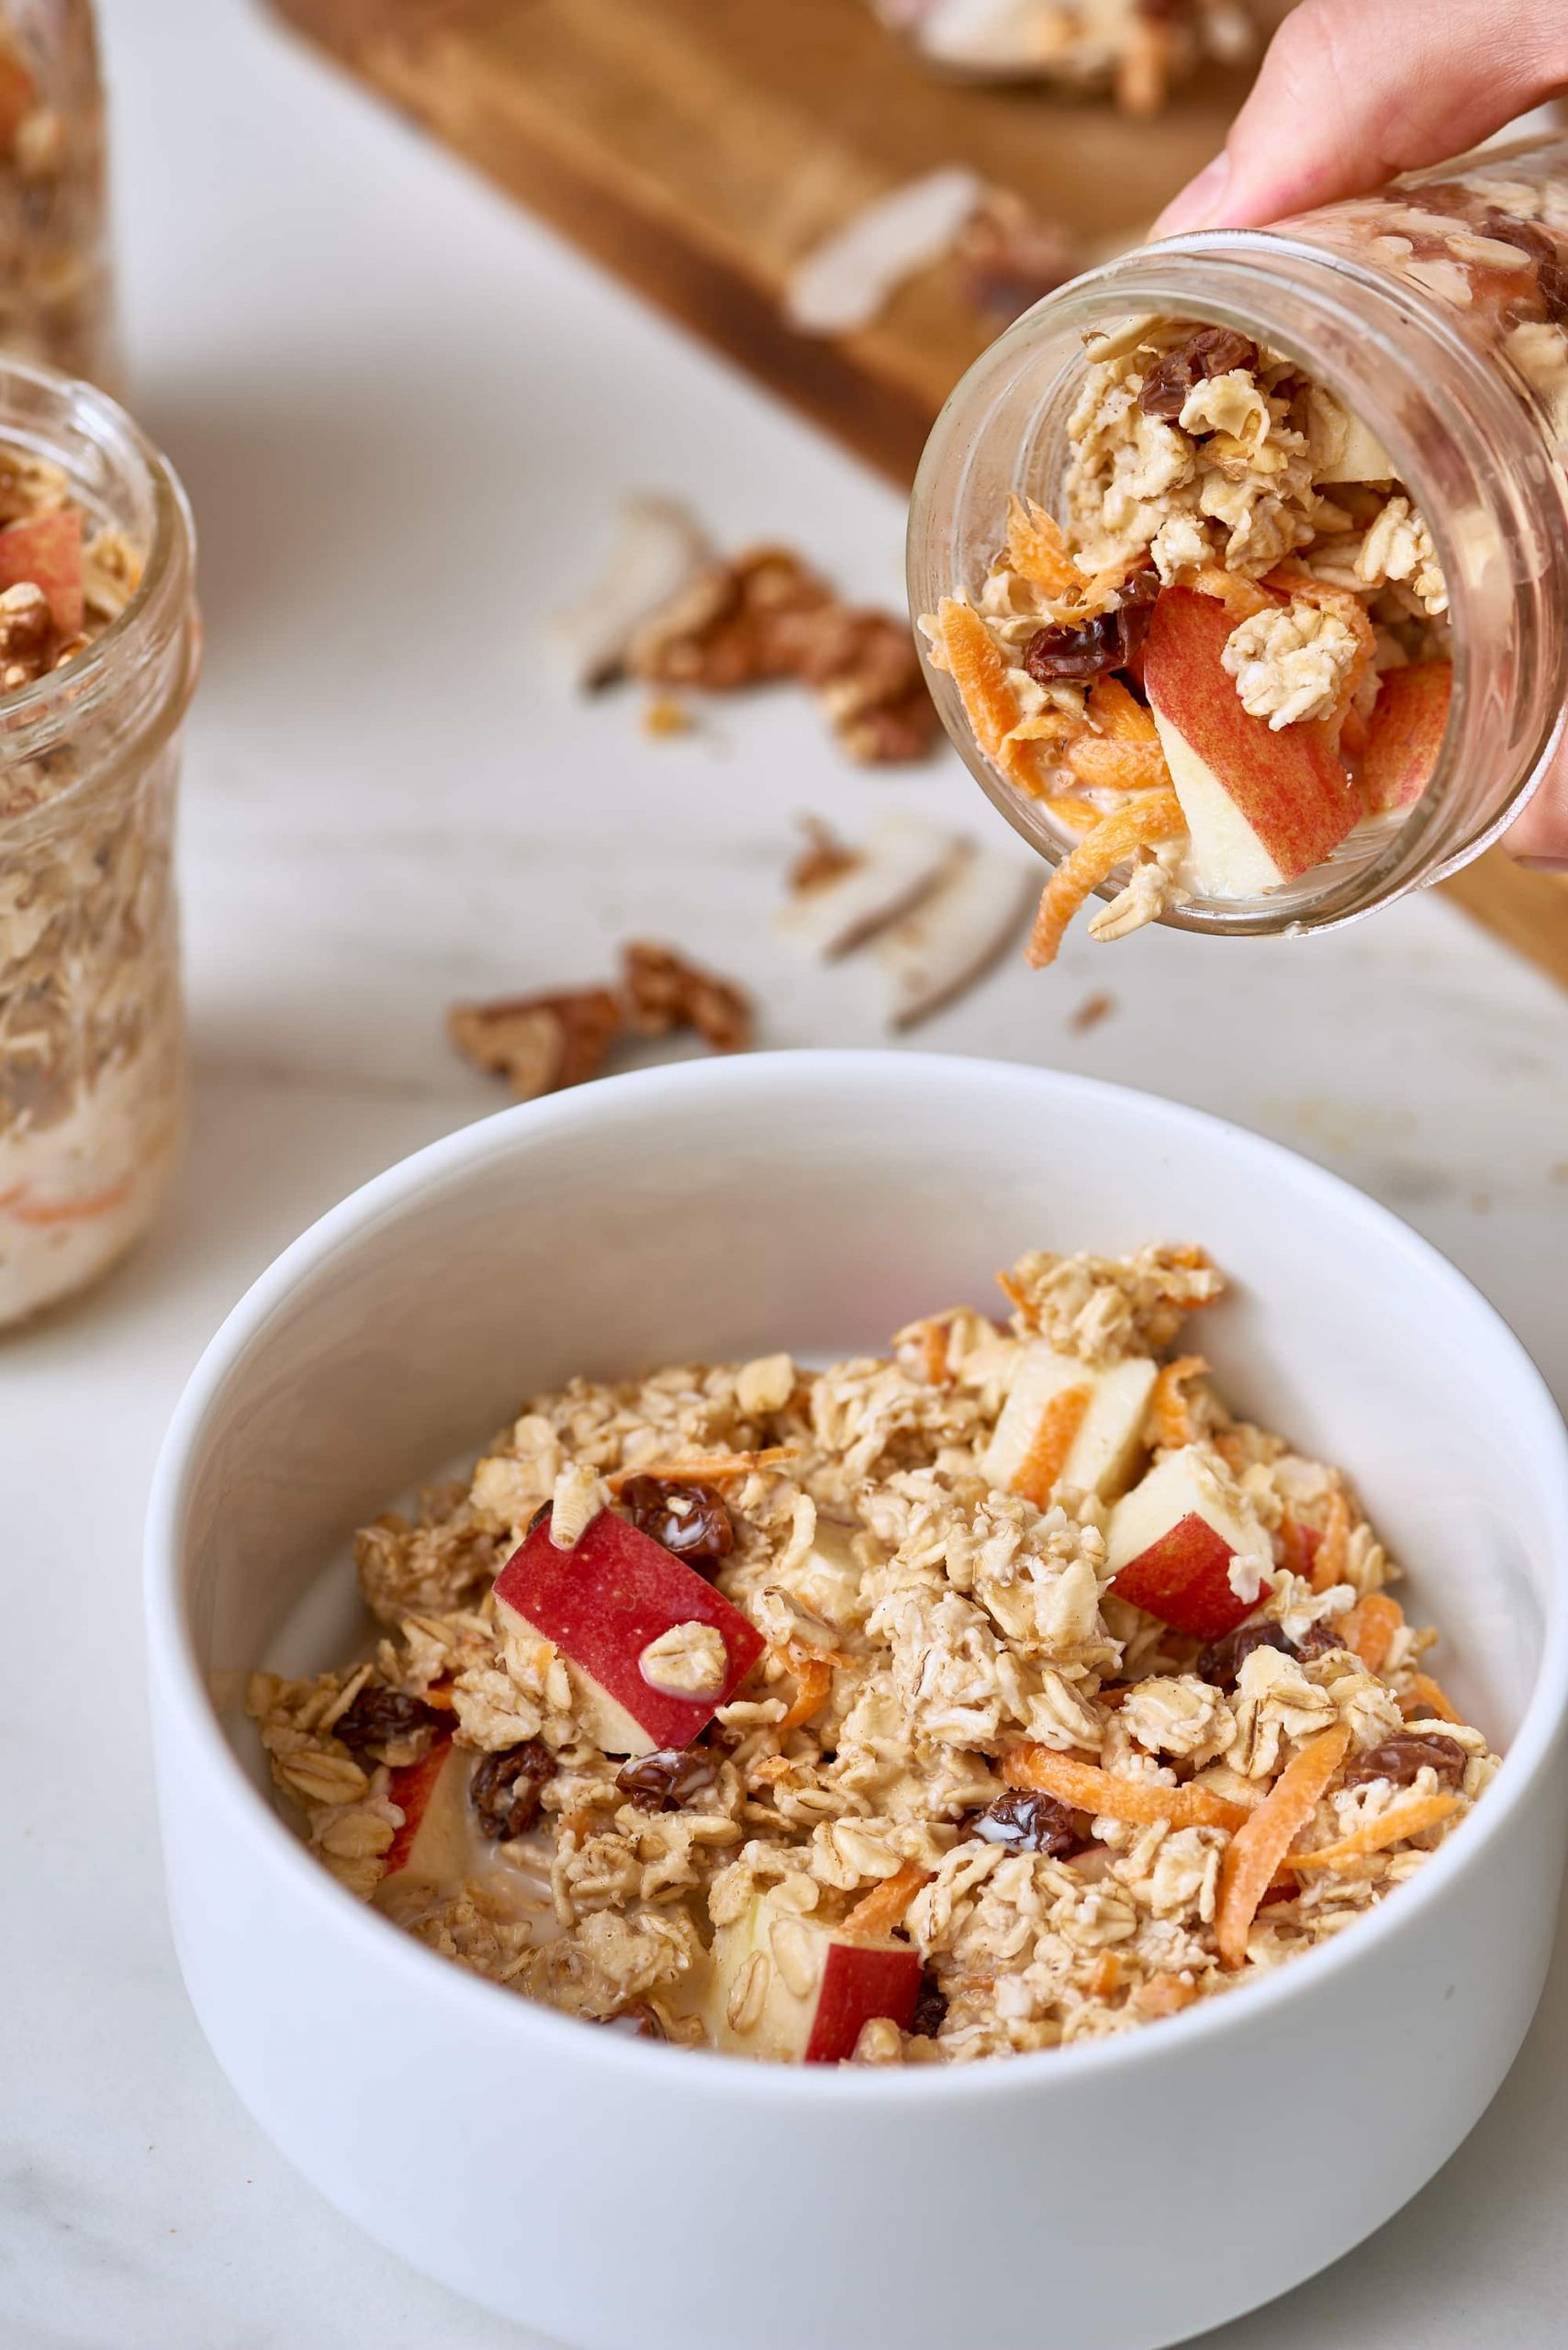 Heart Healthy Breakfast Recipes
 10 Heart Healthy Breakfast Ideas for Busy Mornings